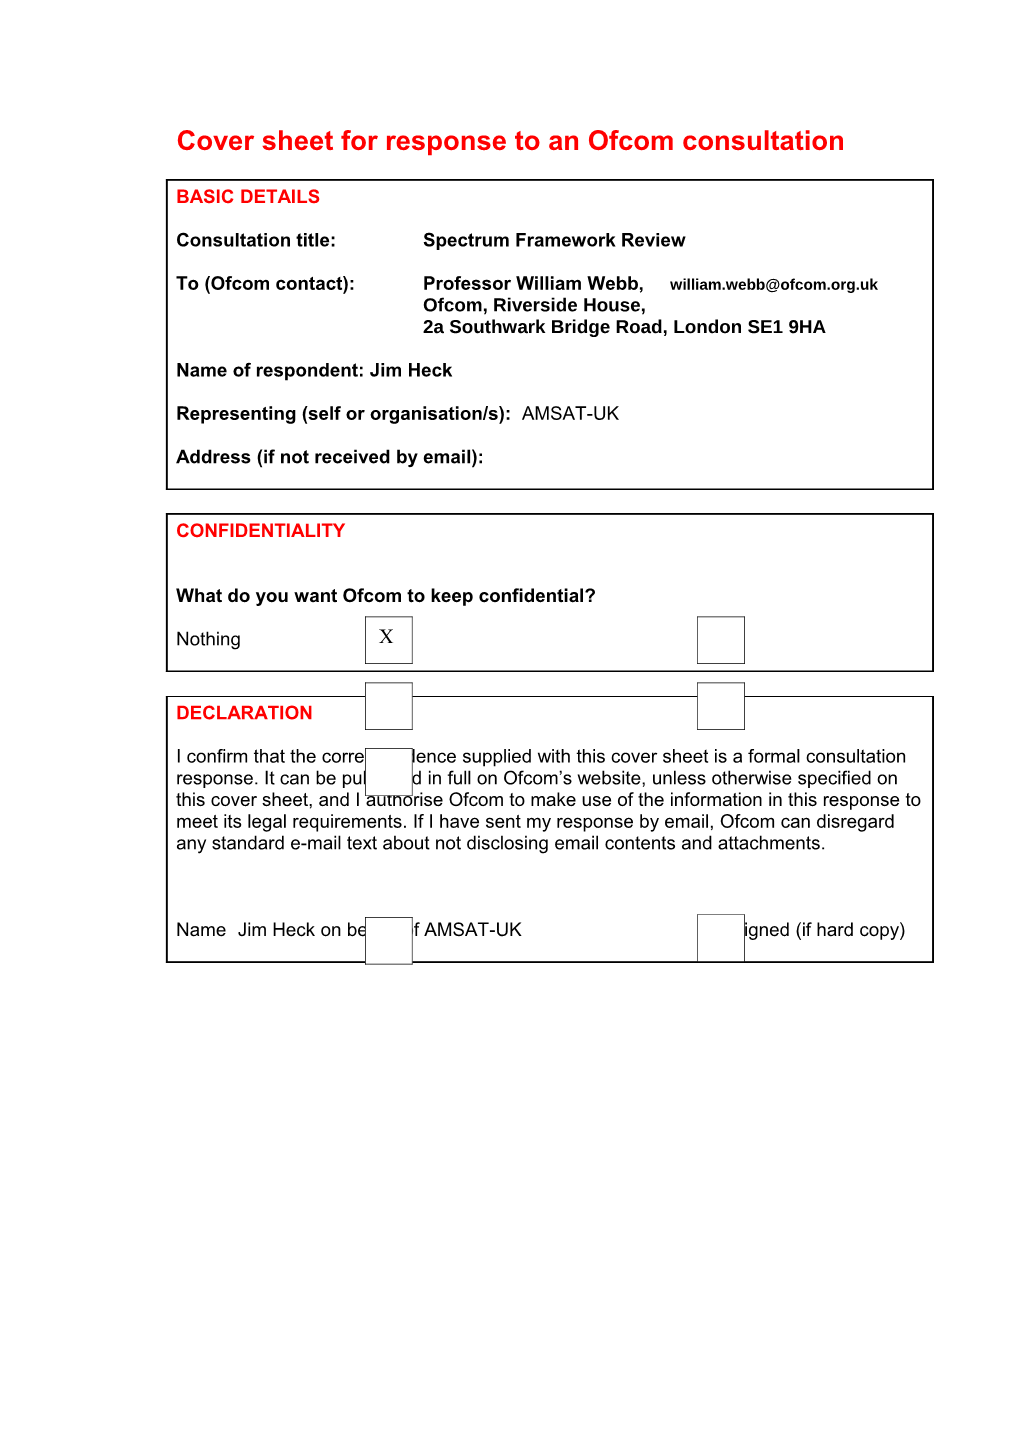 Cover Sheet for Response to an Ofcom Consultation